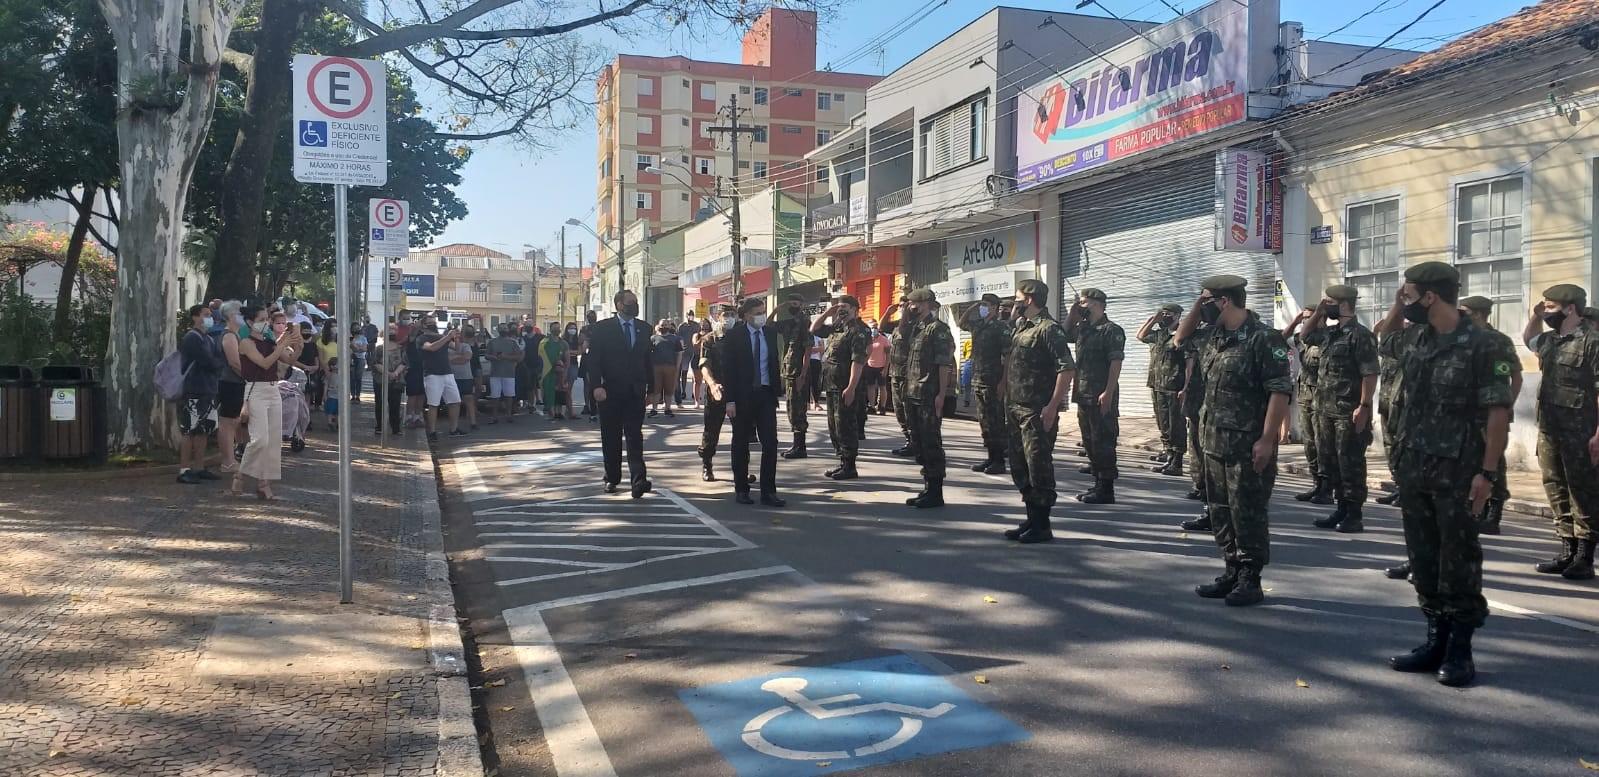 Dia da Pátria não passa em branco em Itatiba, com comemorações na Praça da Bandeira